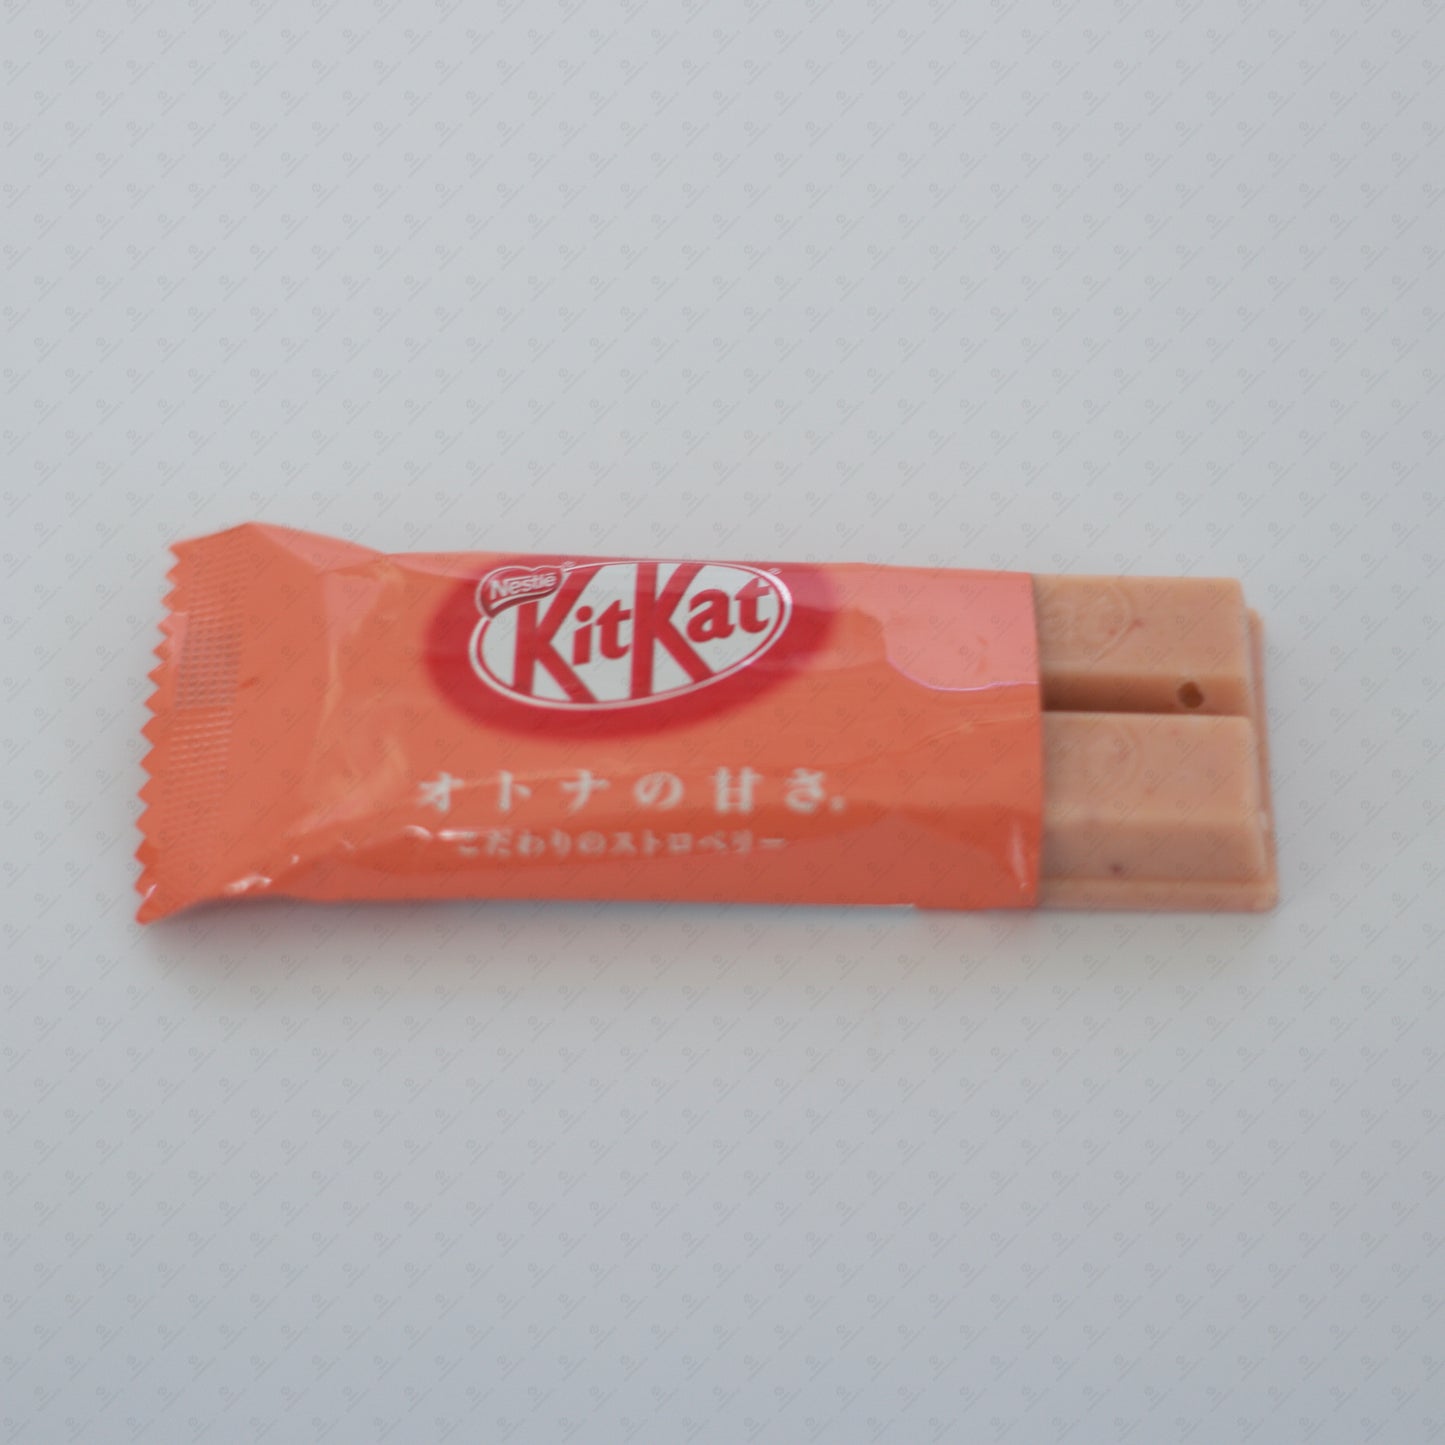 Expired - Melted - Nestle Japanese KitKat Strawberry Mini Bars 11 Pcs